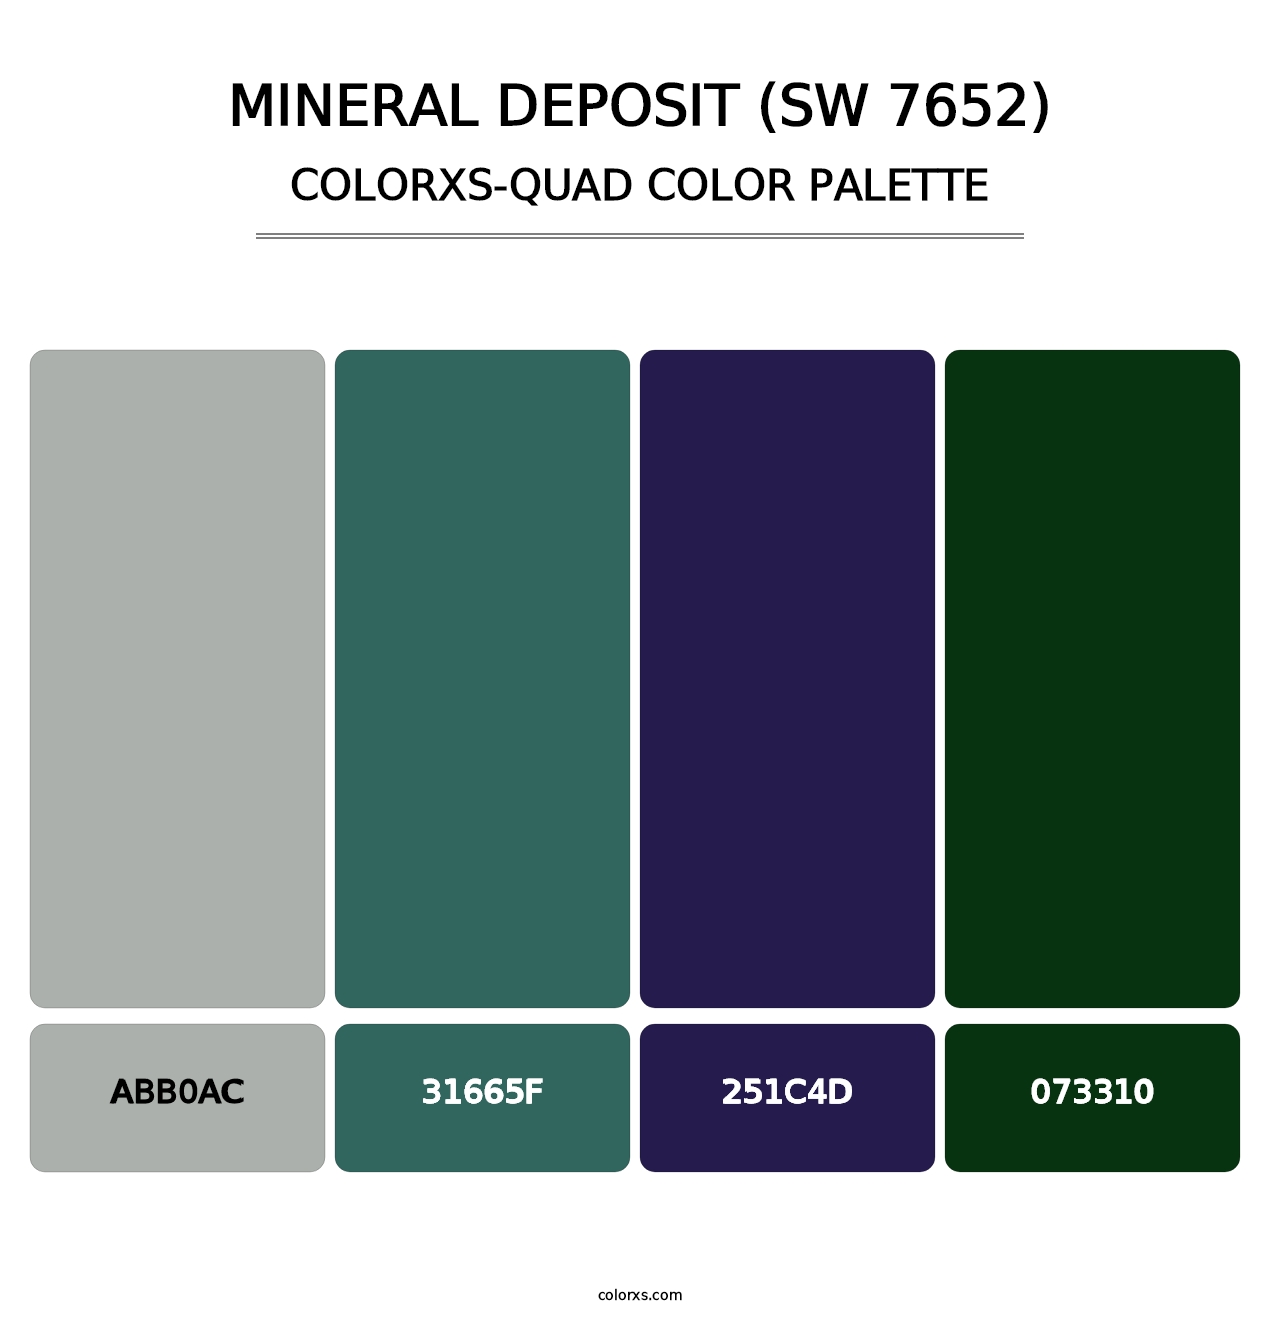 Mineral Deposit (SW 7652) - Colorxs Quad Palette